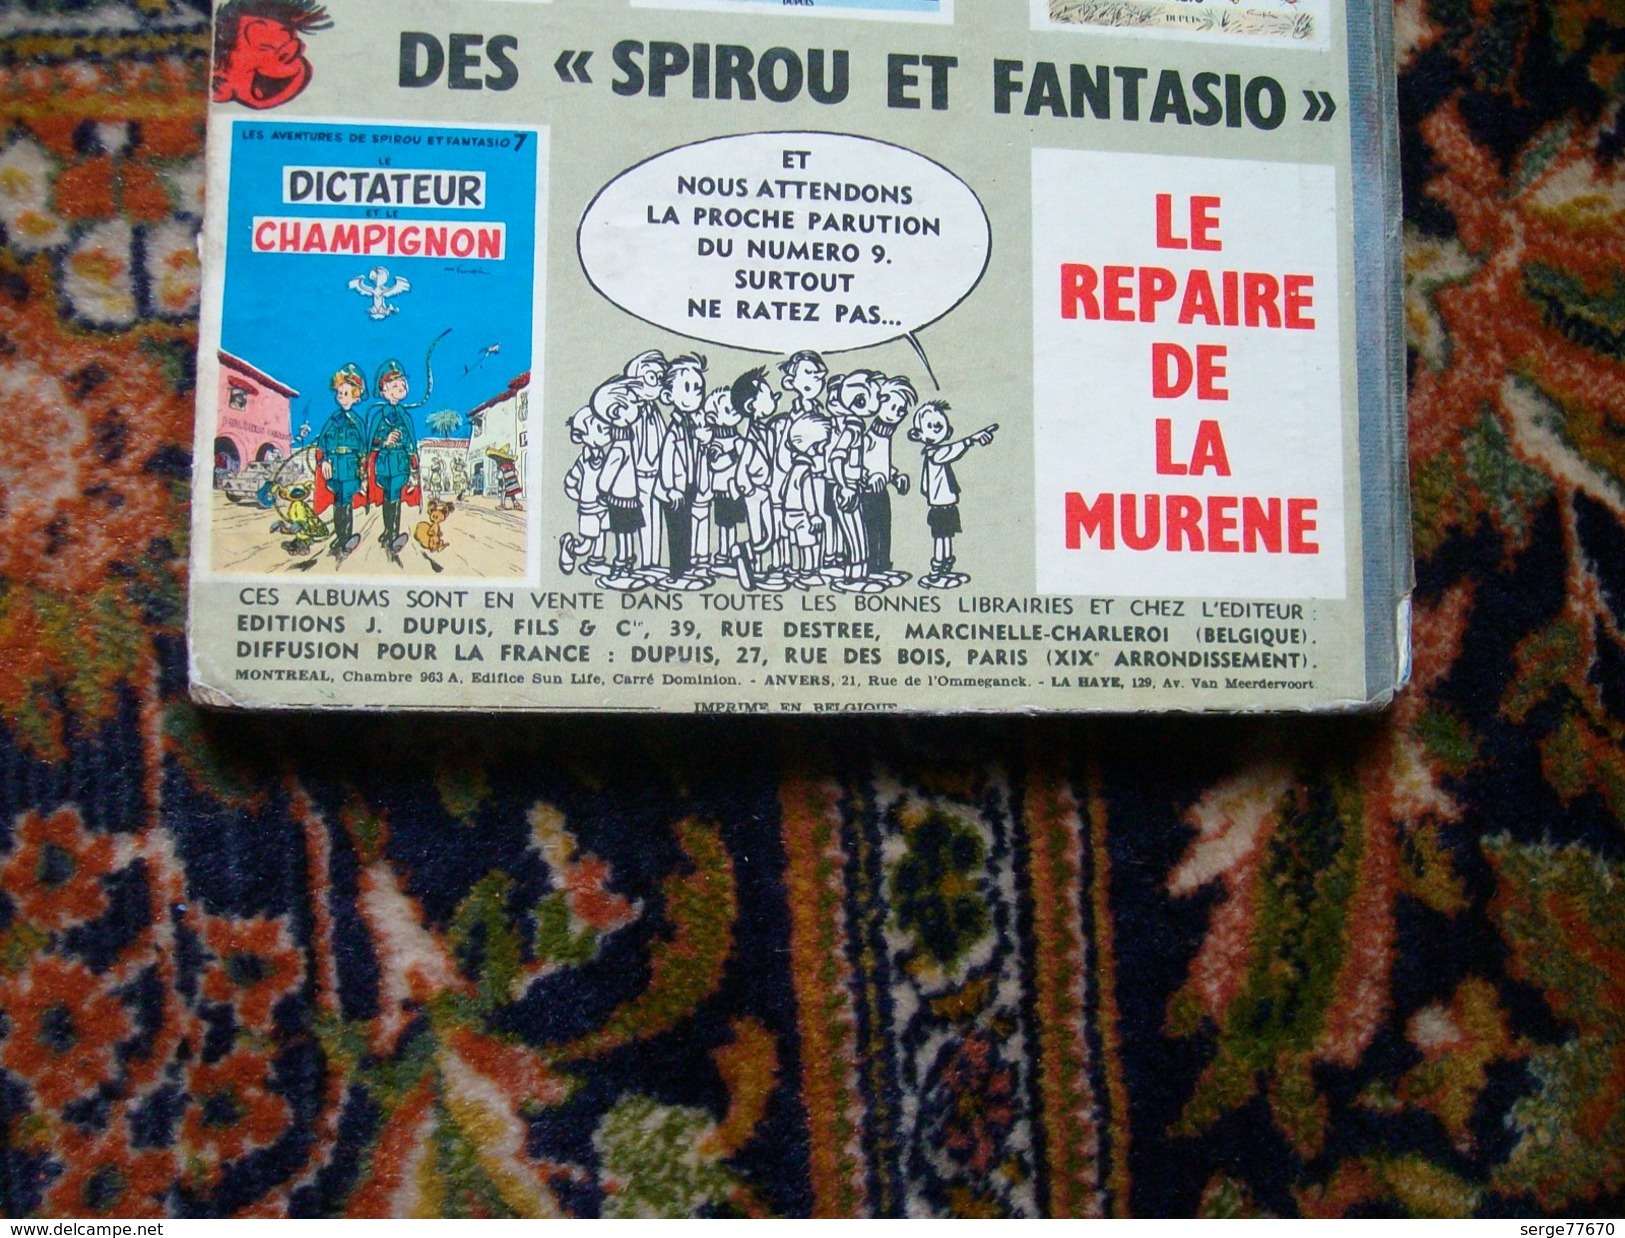 Spirou et Fantasio Franquin La mauvaise tête 1956 édition originale belge eo Dupuis